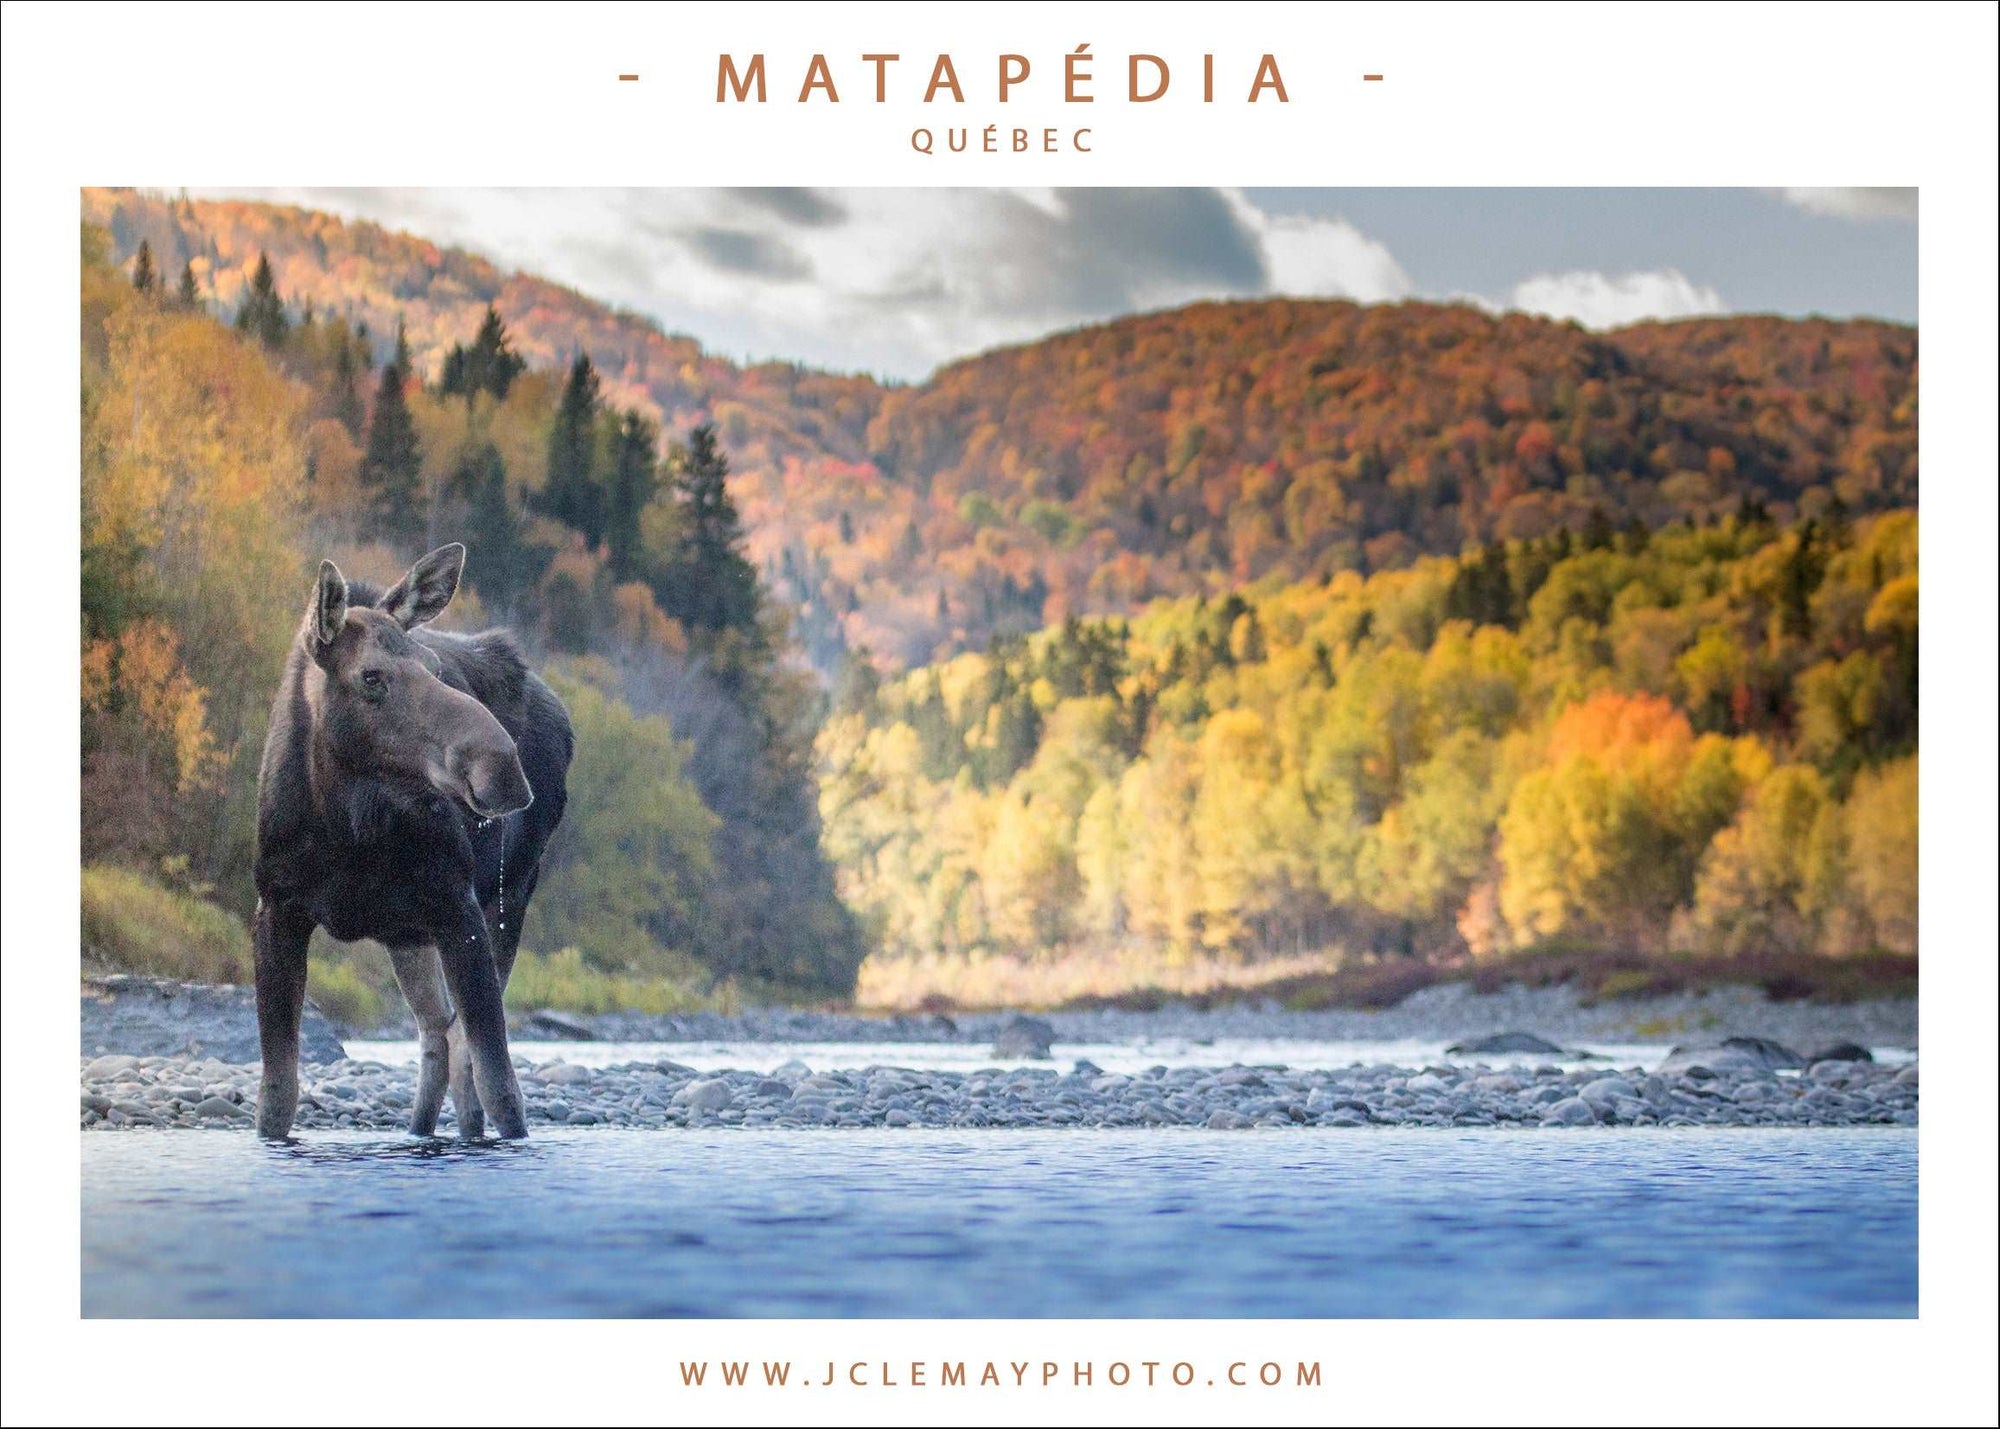 Carte postale d'un orignal en pleine rivière Matapédia, par JC Lemay Photo